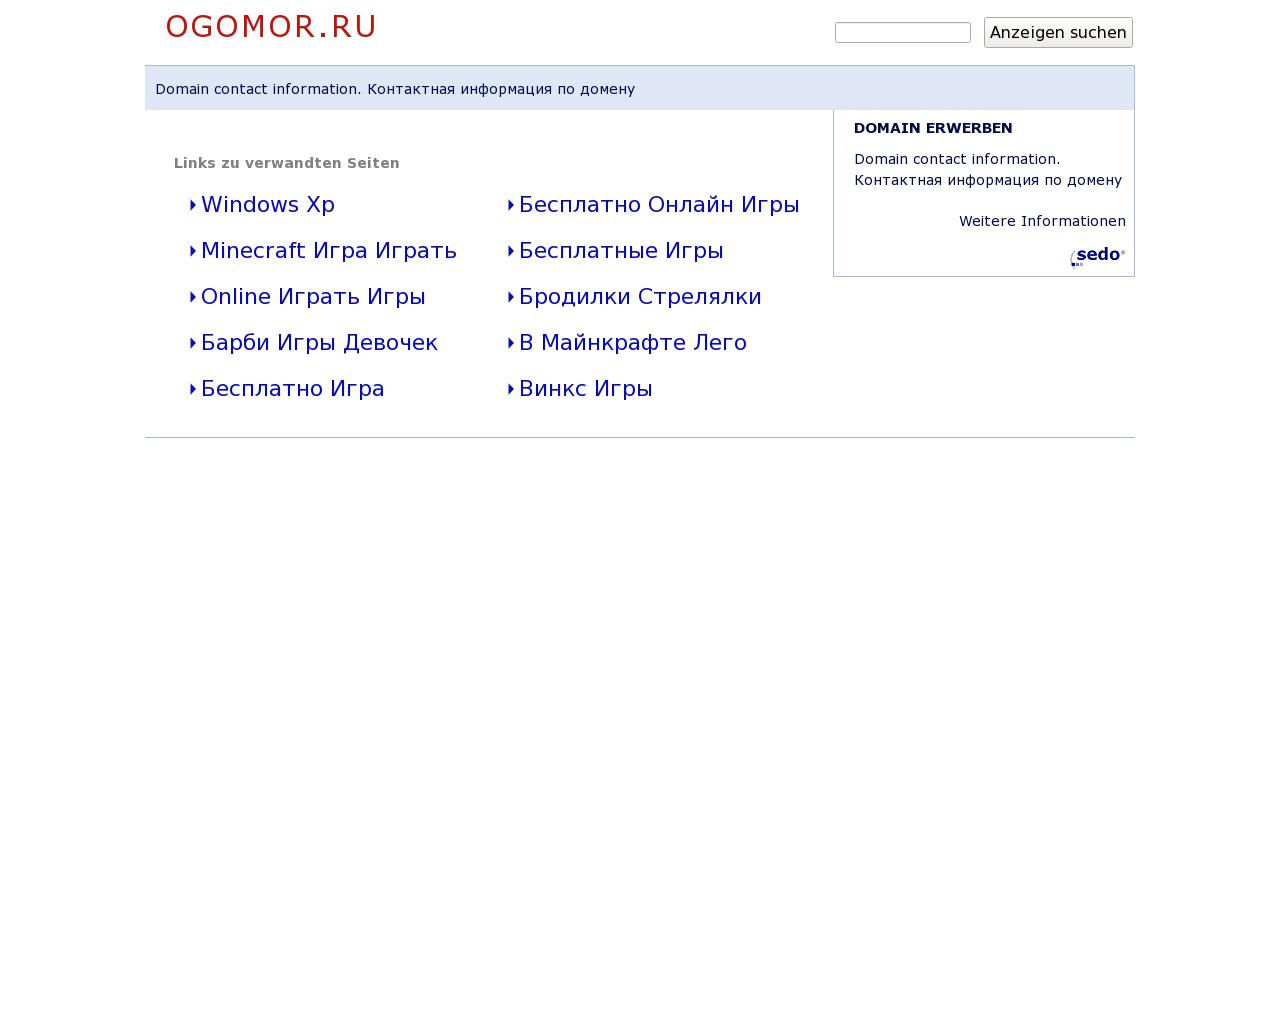 Изображение сайта ogomor.ru в разрешении 1280x1024